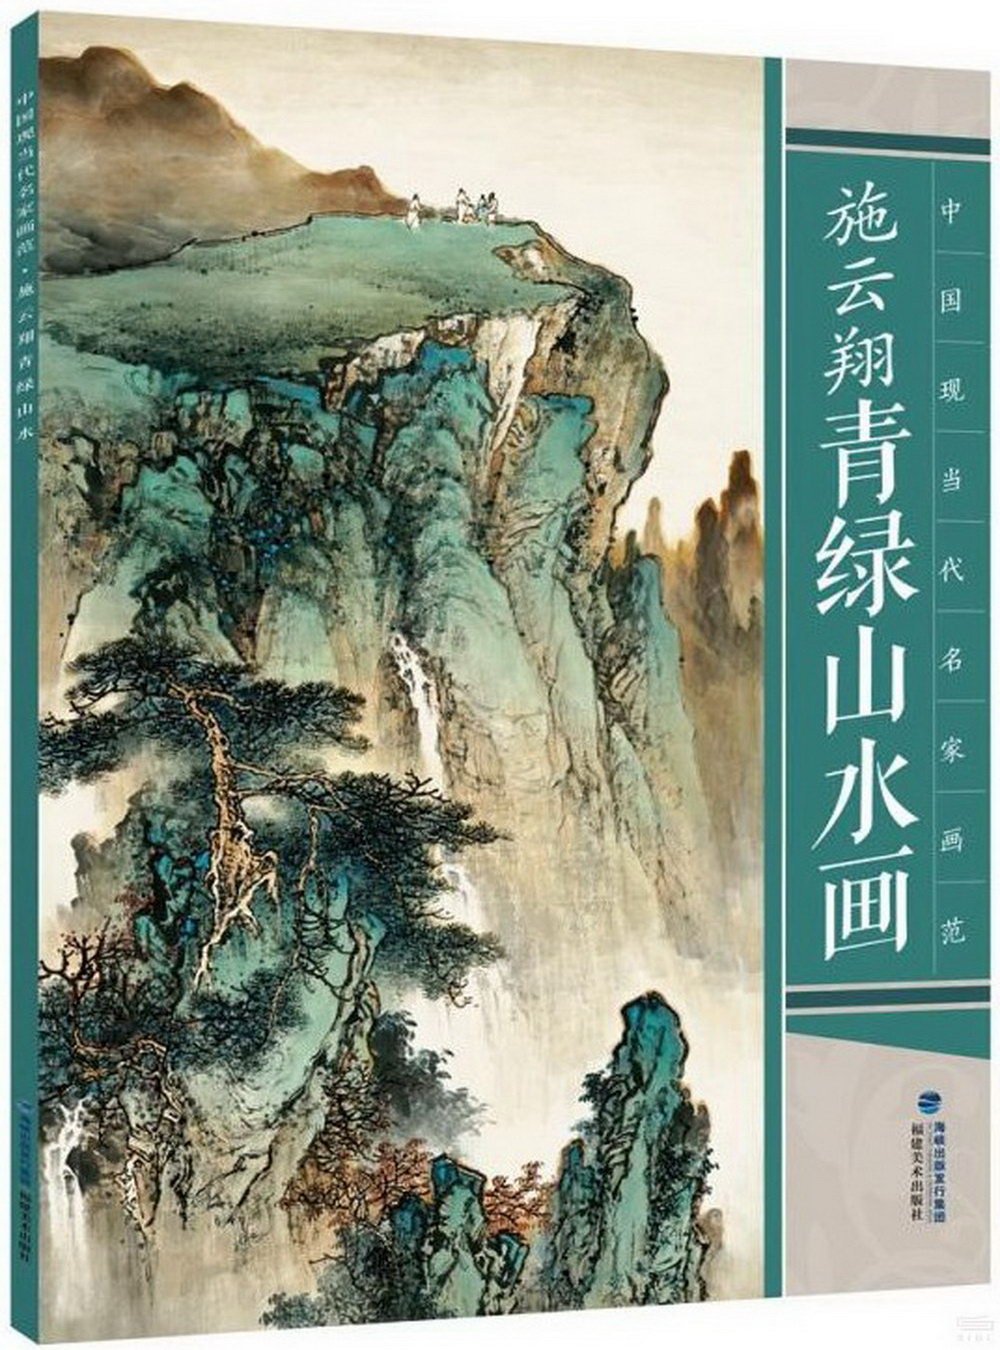 中國現當代名家畫范·施雲翔青綠山水畫